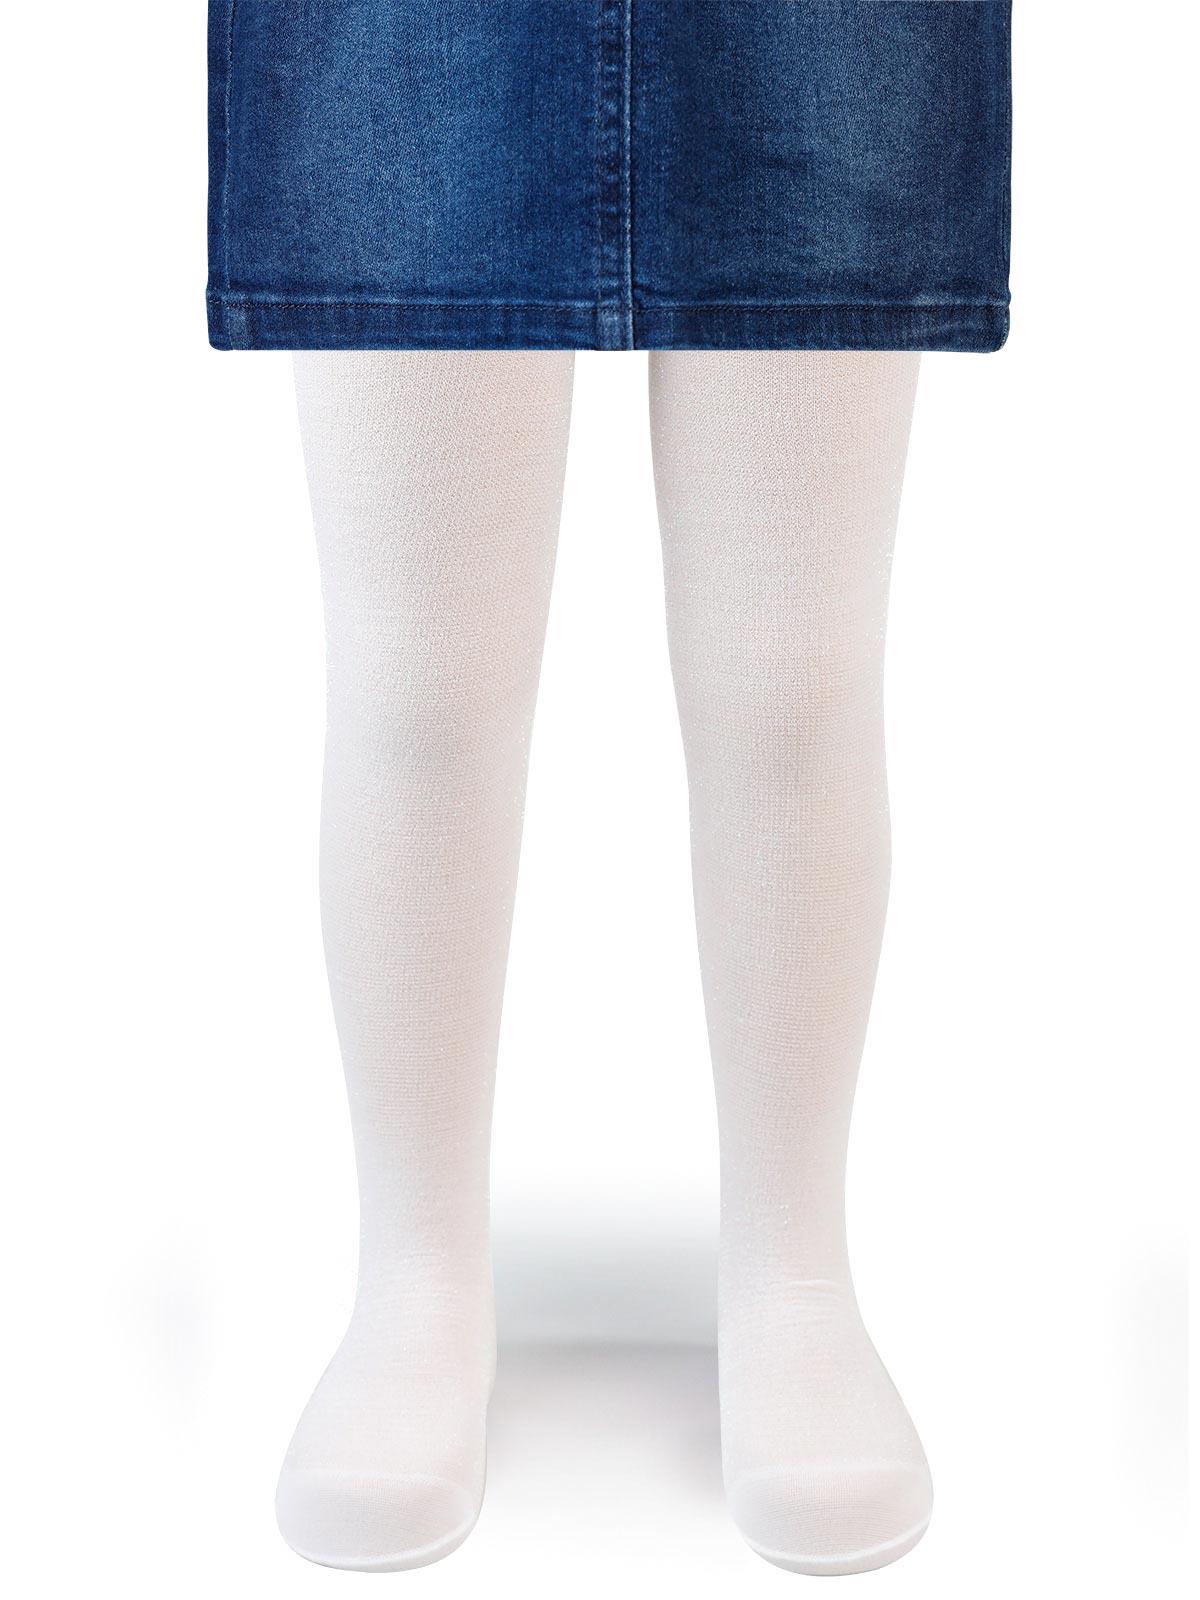 Artı Kız Çocuk Taçlı Külotlu Çorap 1-9 Yaş Beyaz